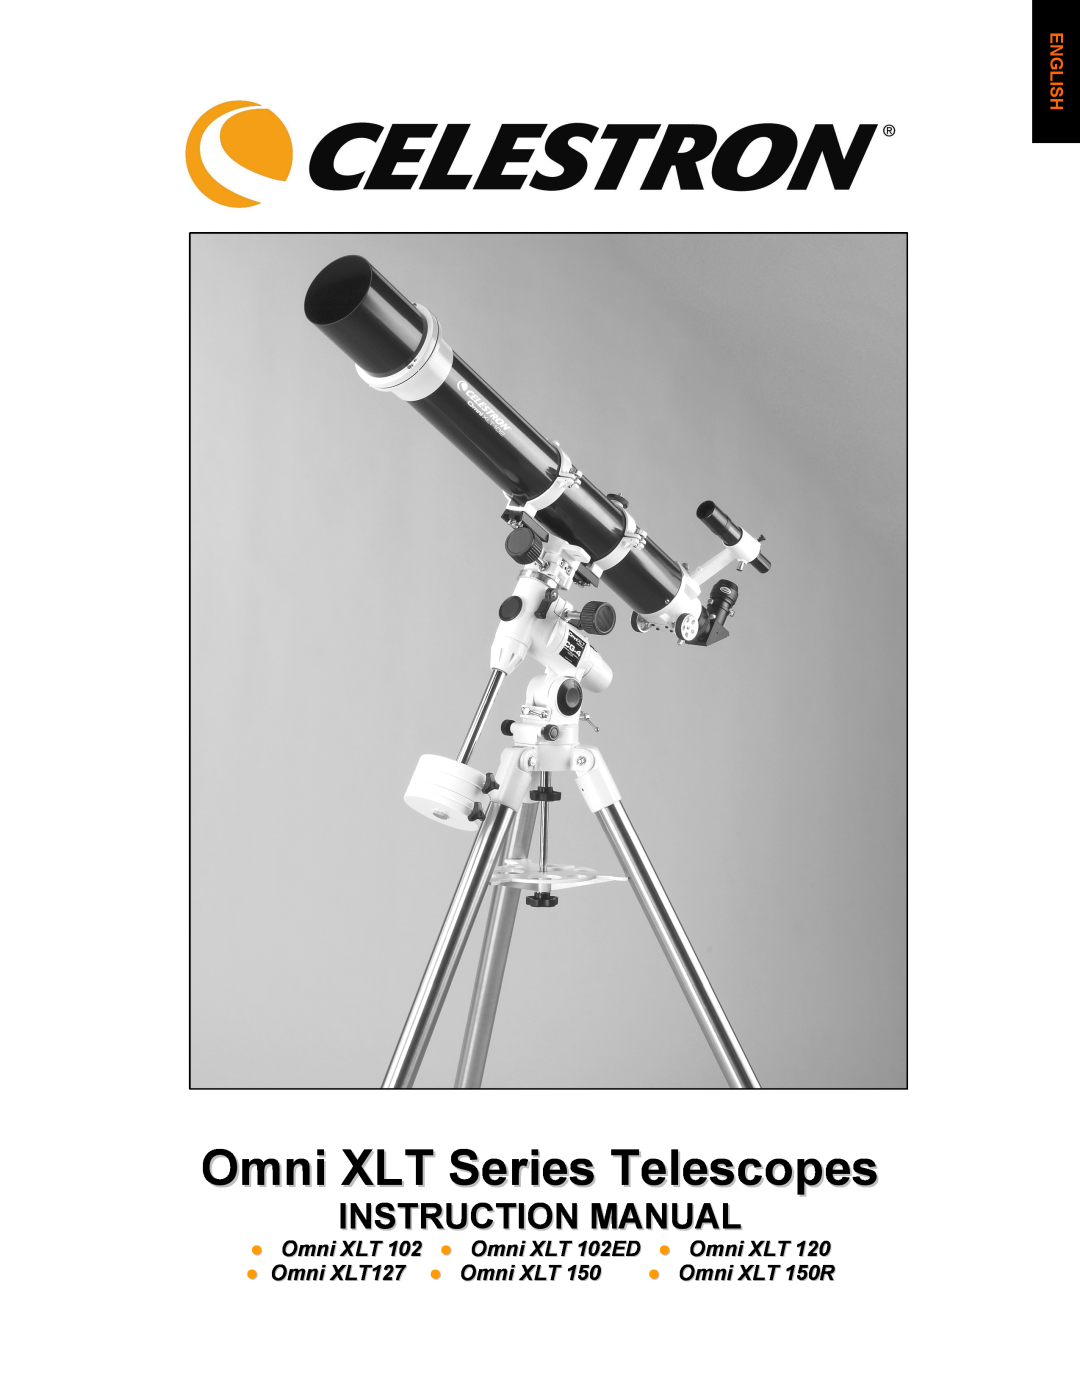 Celestron OMNI XLT 102 manual Omni XLT Series Telescopes, Instruction Manual, Omni XLT 102ED, Omni XLT127, Omni XLT 150R 